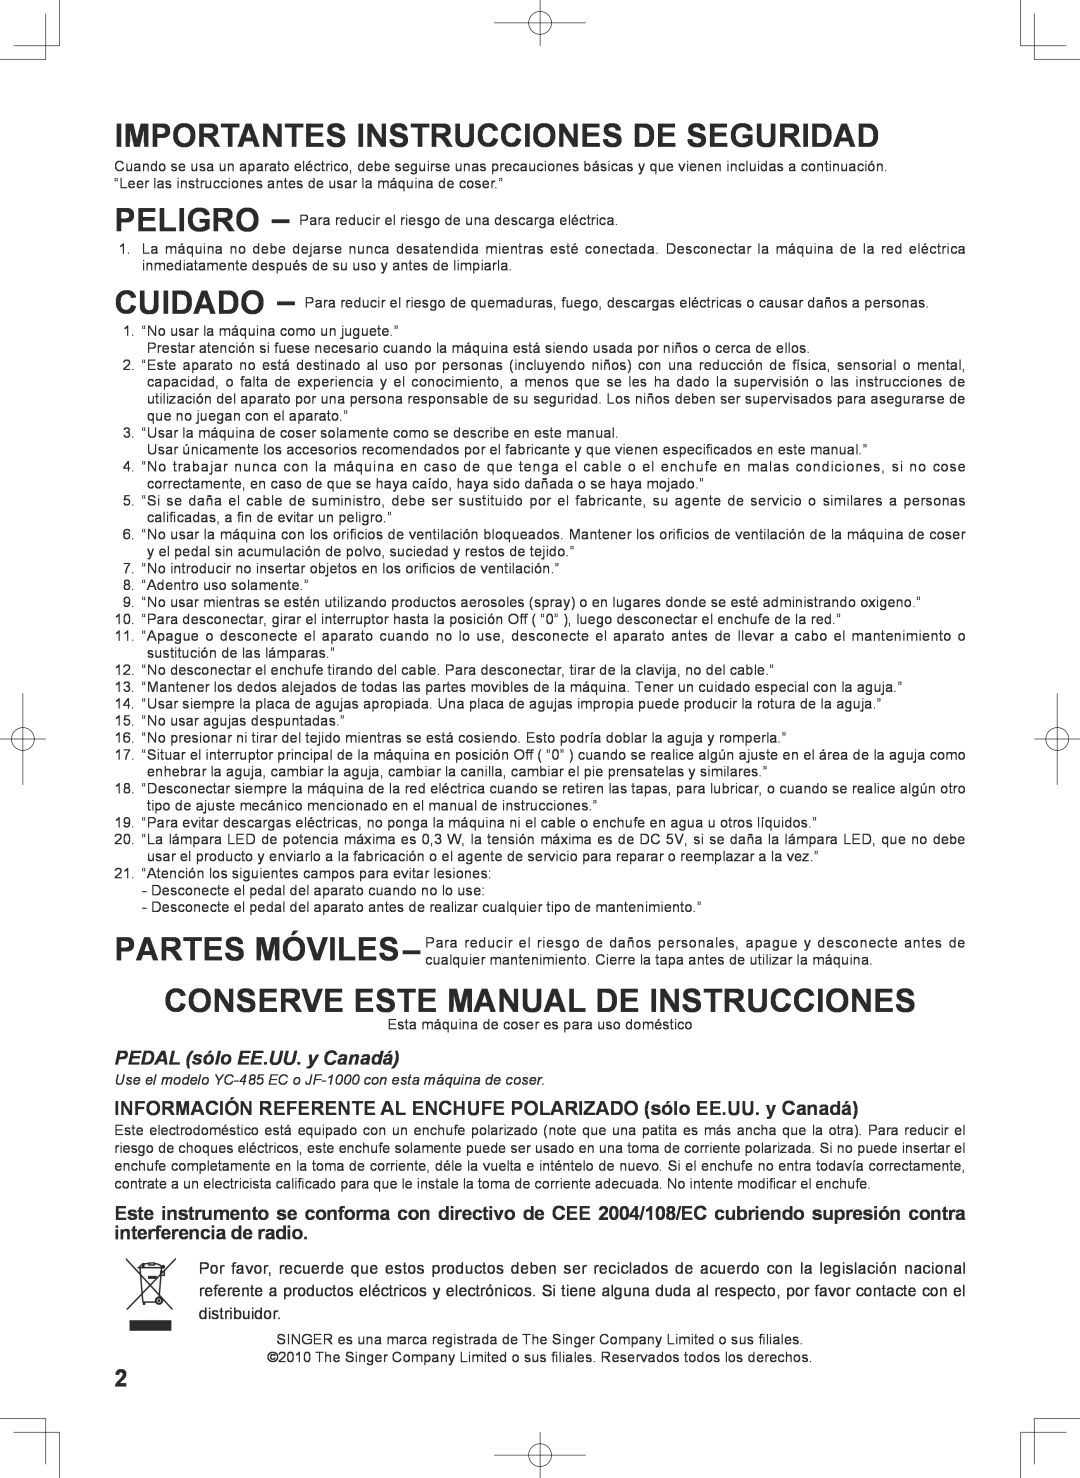 Singer 7467S Importantes Instrucciones De Seguridad, Conserve Este Manual De Instrucciones, PEDAL sólo EE.UU. y Canadá 